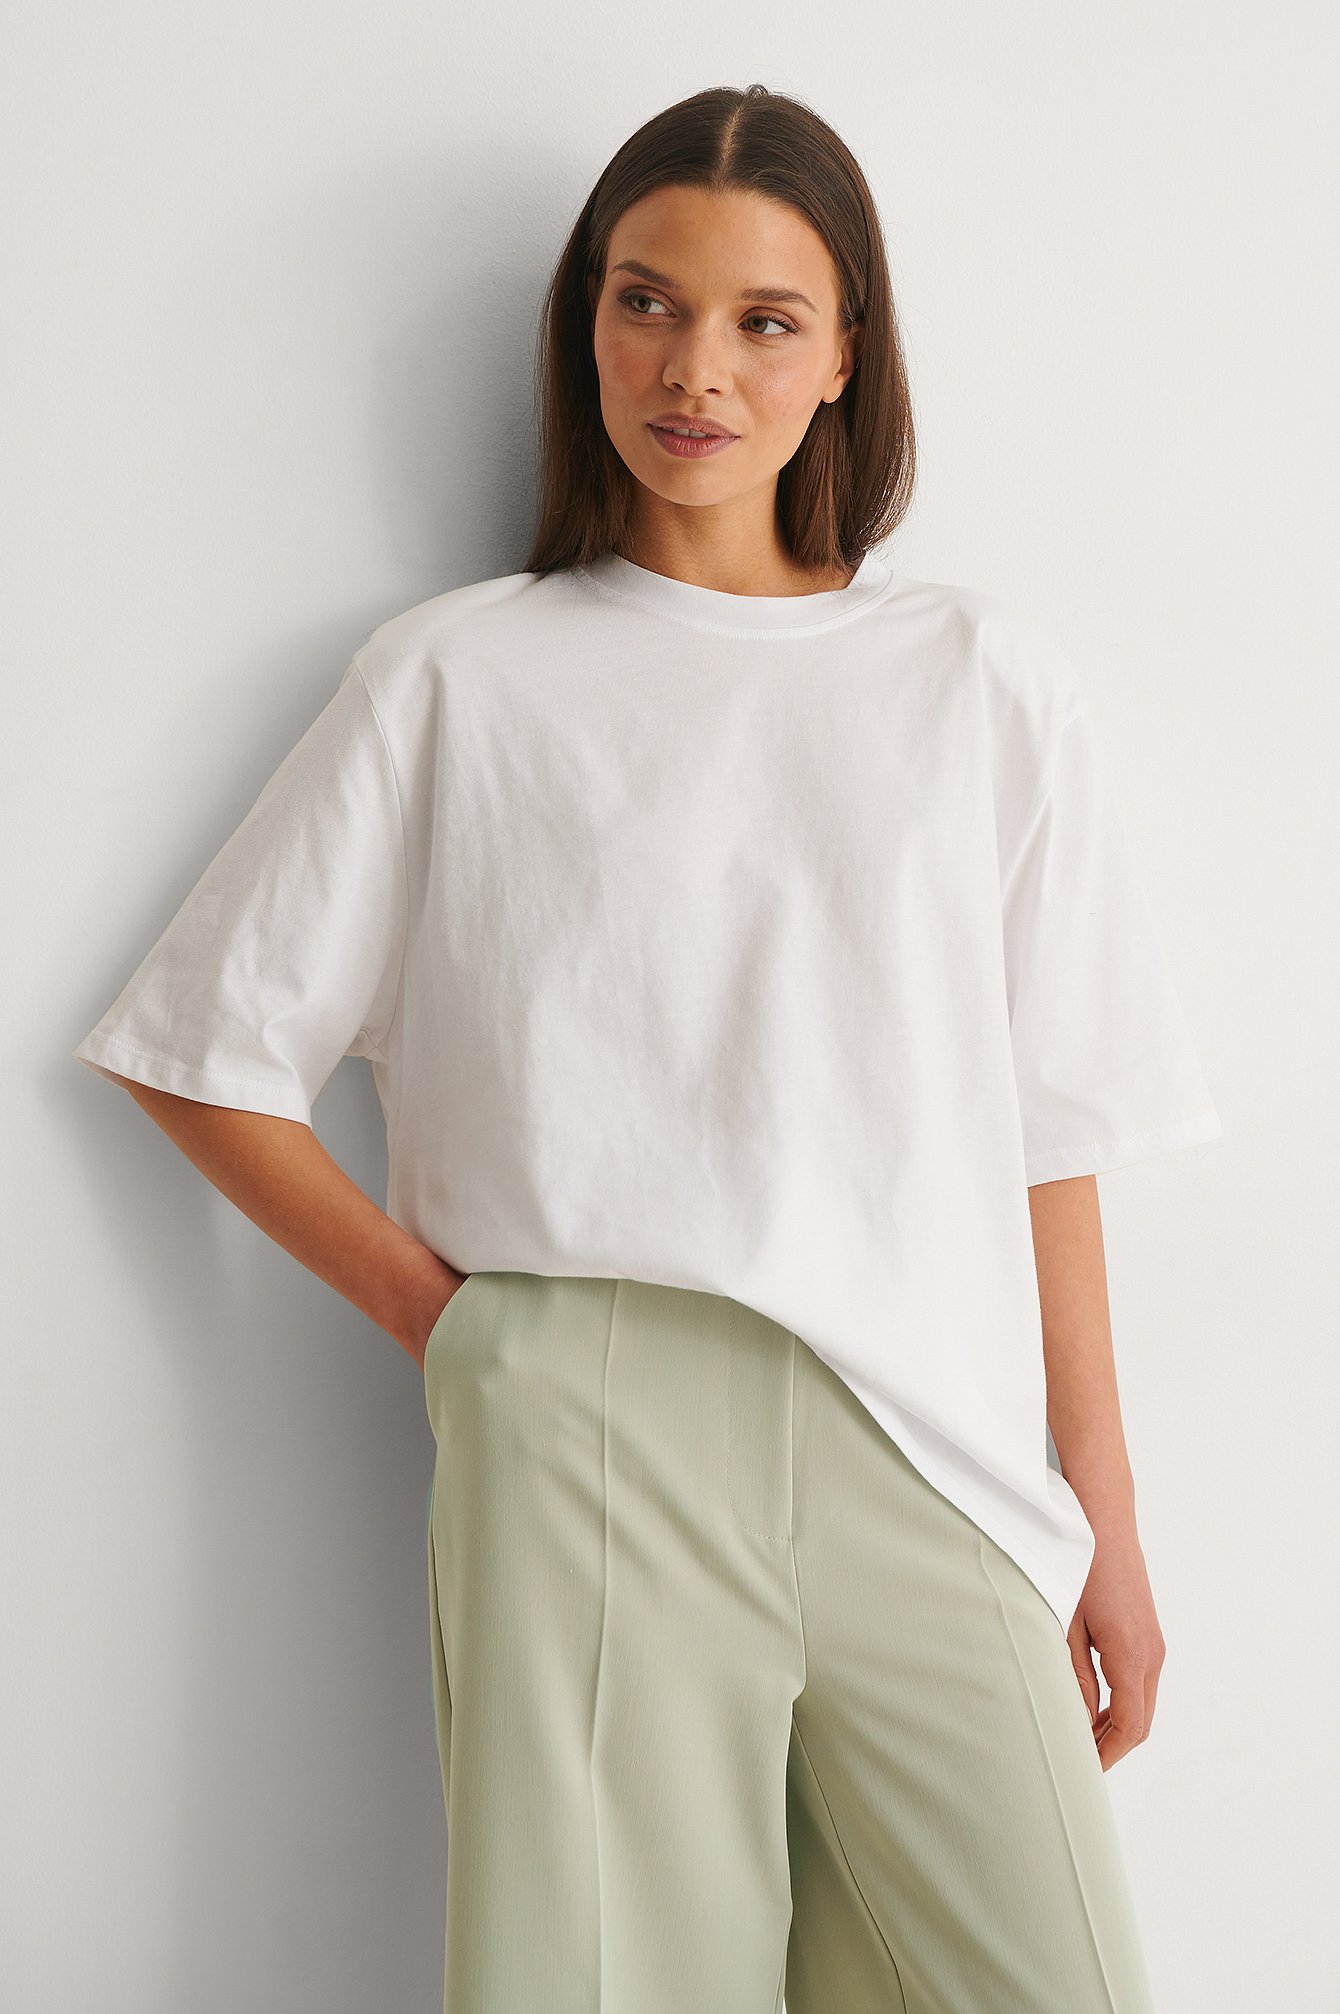 White Ekologiczny t-shirt o fasonie pudełkowym z poduszkami na ramionach